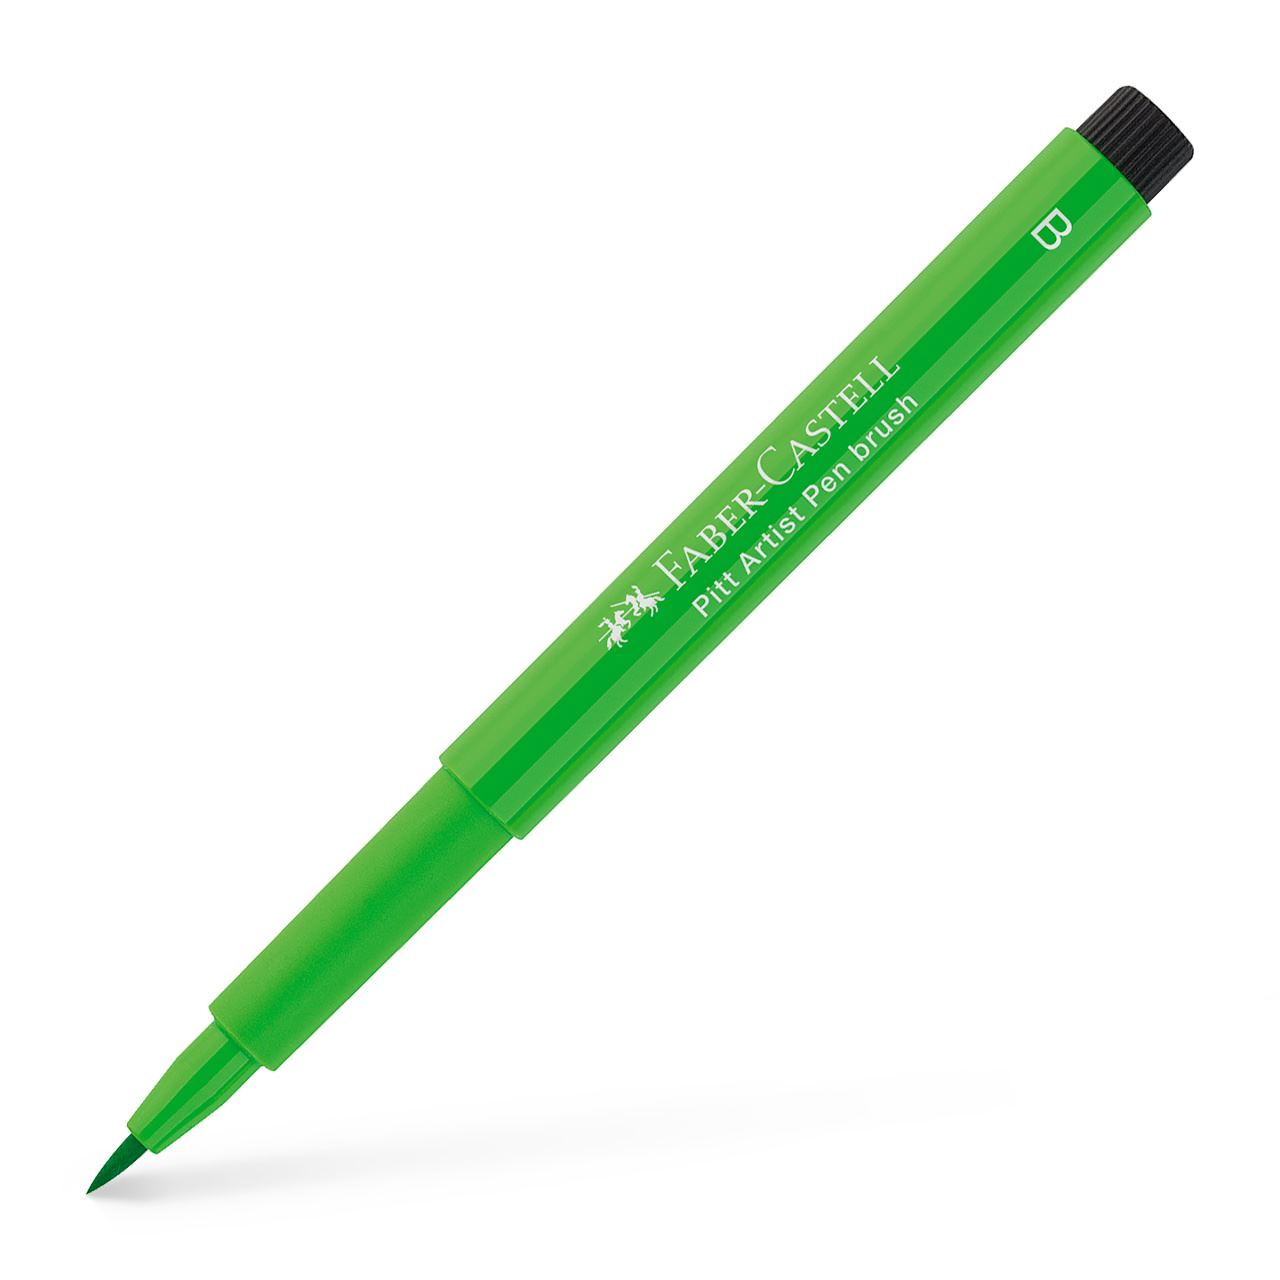 Faber-Castell - Pitt Artist Pen Brush India ink pen, leaf green